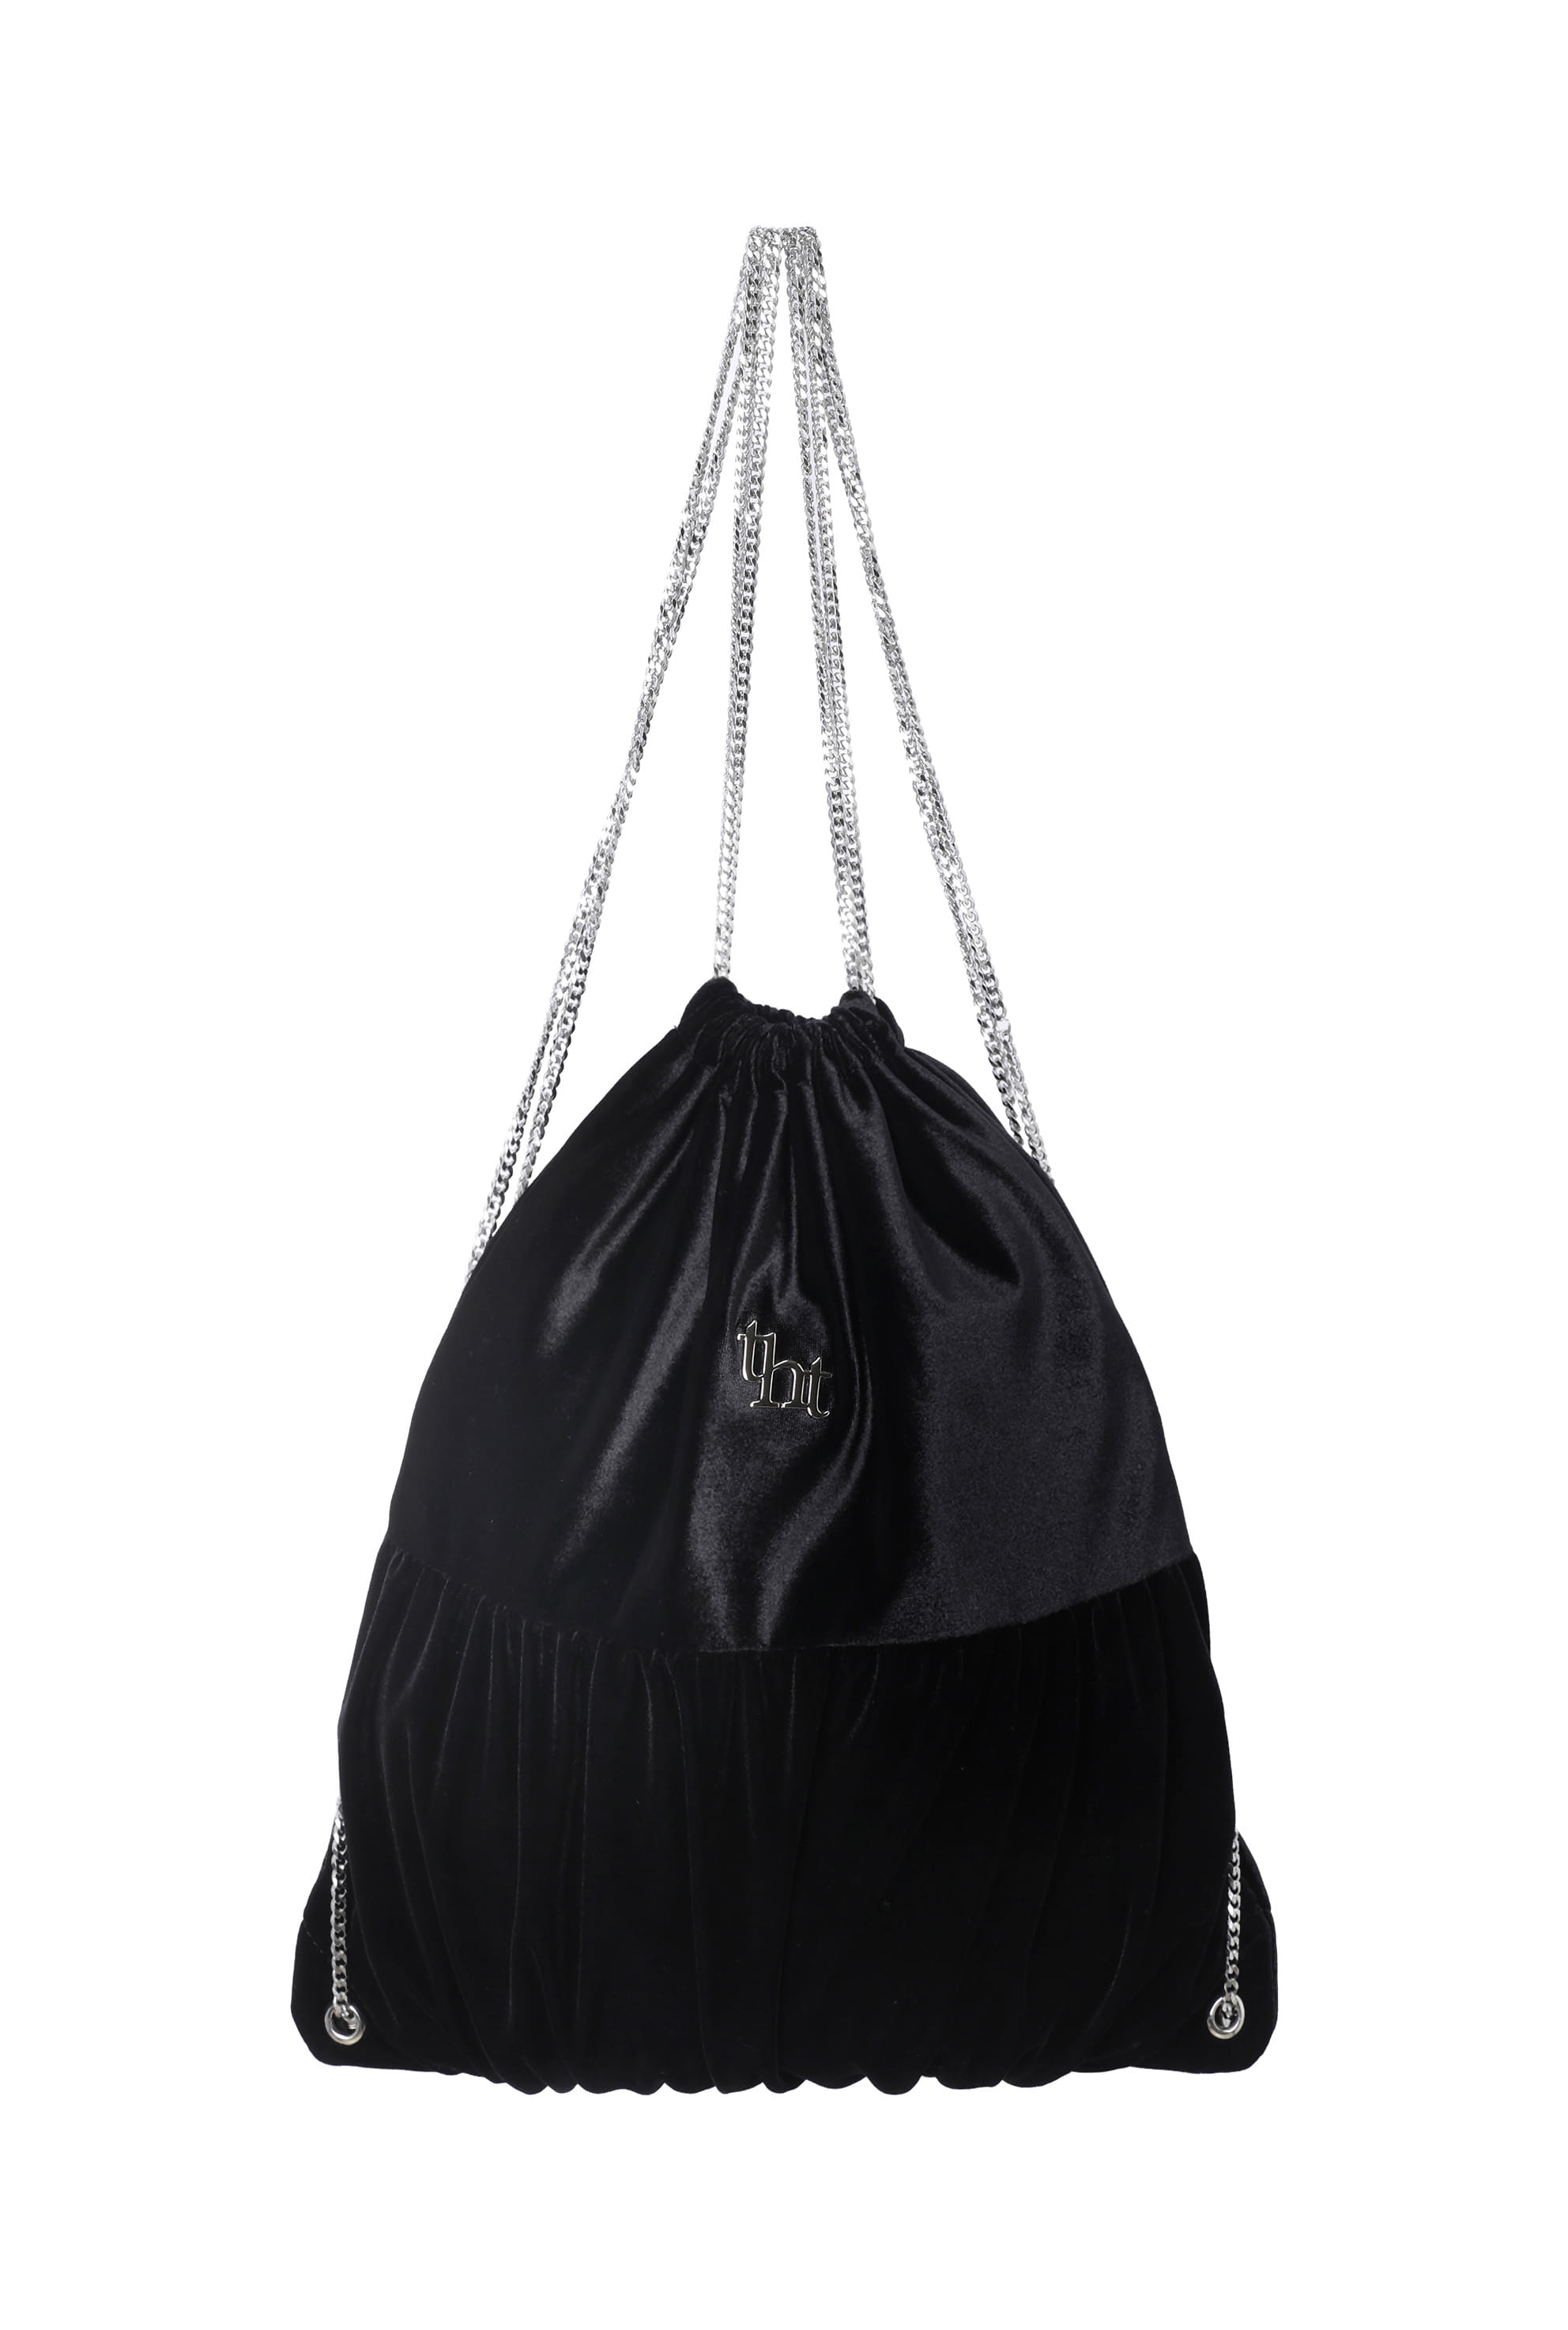 [2nd pre-order] tht velvet chain backpack